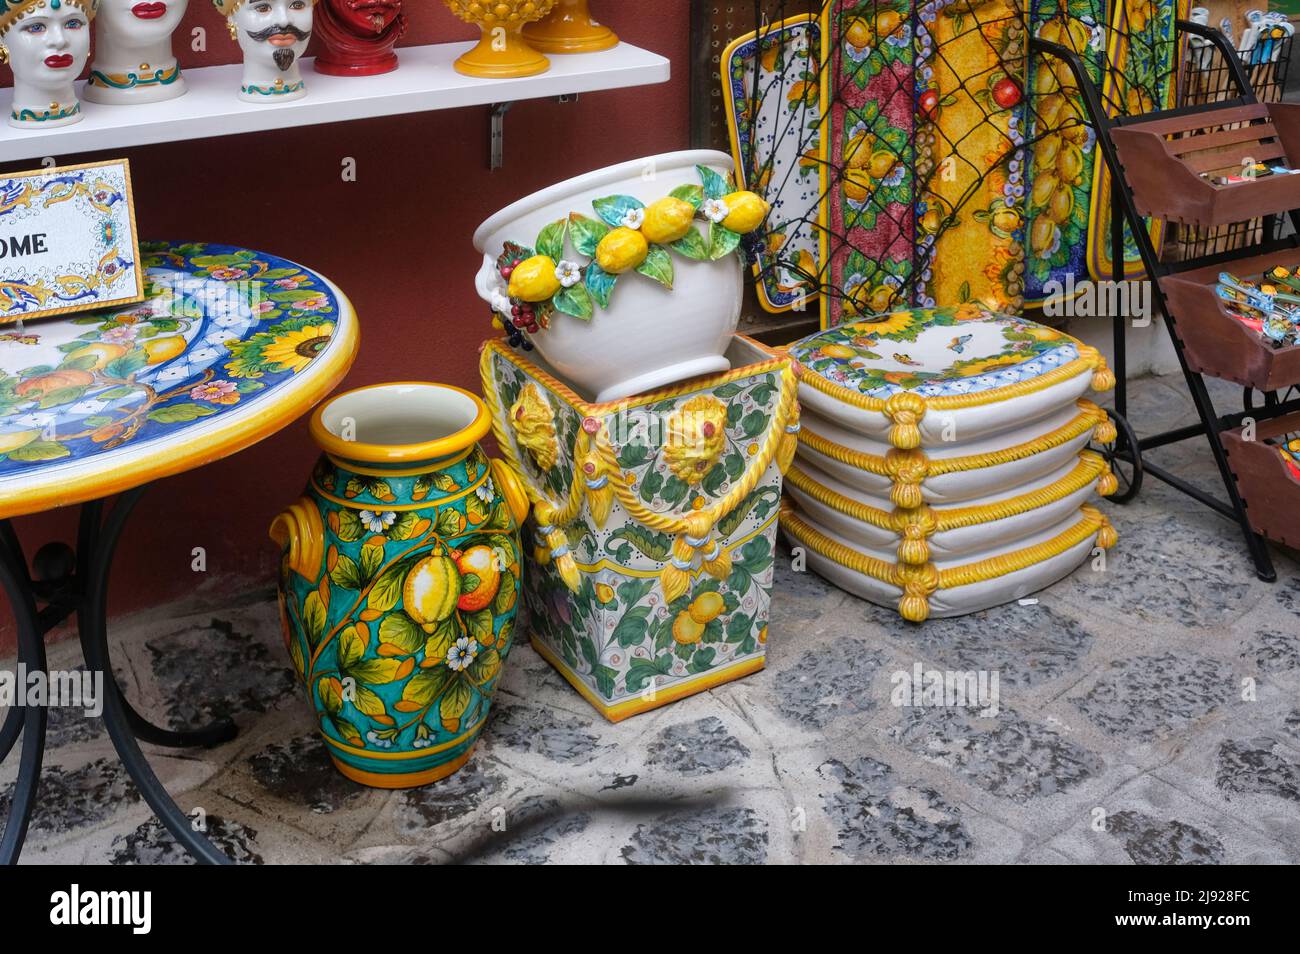 Famose ceramiche prodotte sulla costiera amalfitana da abili artigiani, Positano, Salerno, Campania, Italia. Foto Stock